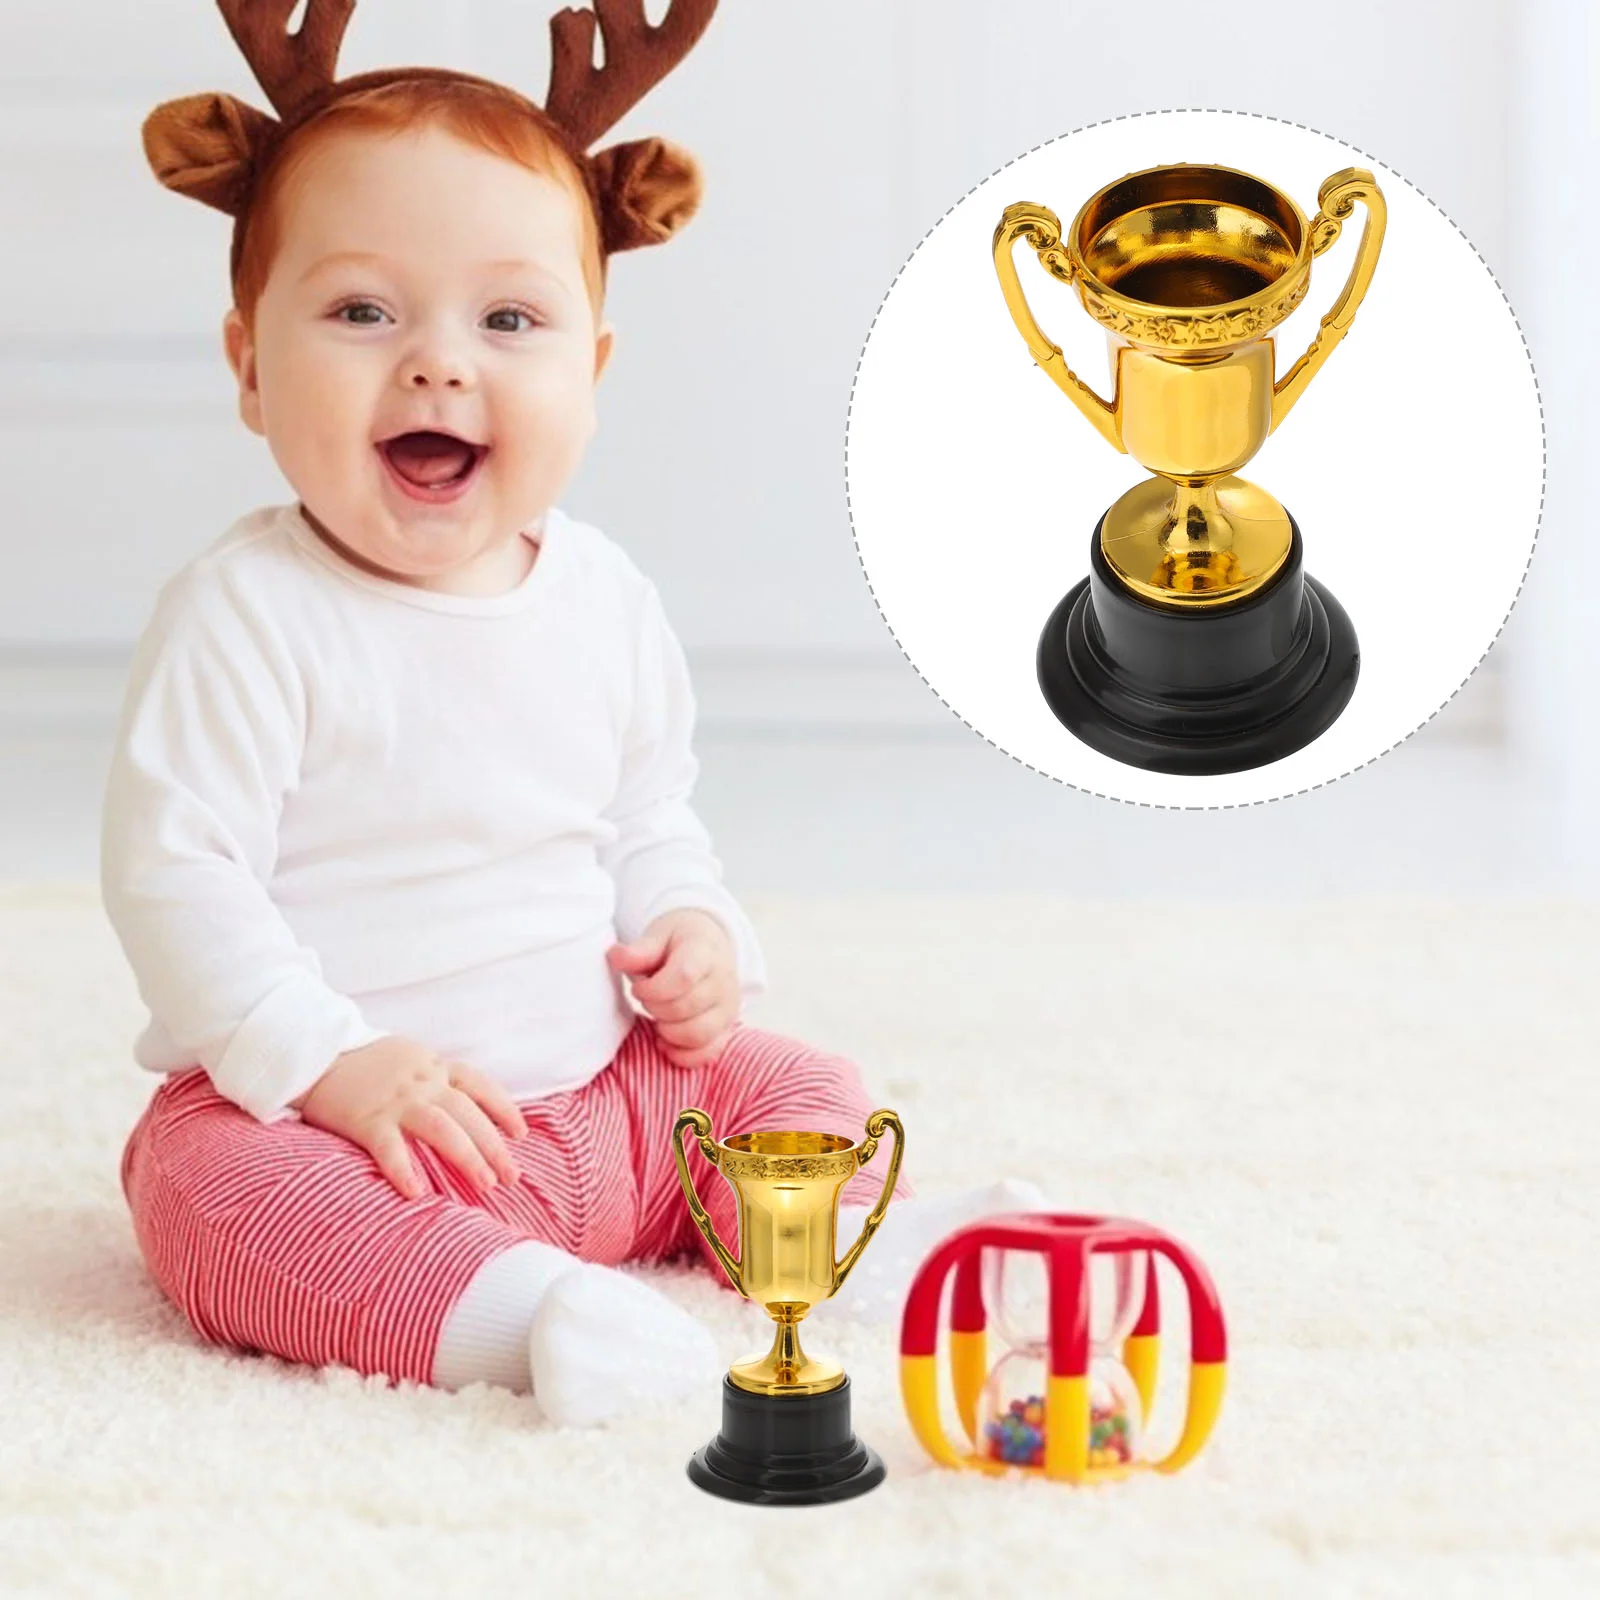 

20 Pcs Kids Award Trophy Baseball Reward Small Prize Cup Mini Basketball Prizes